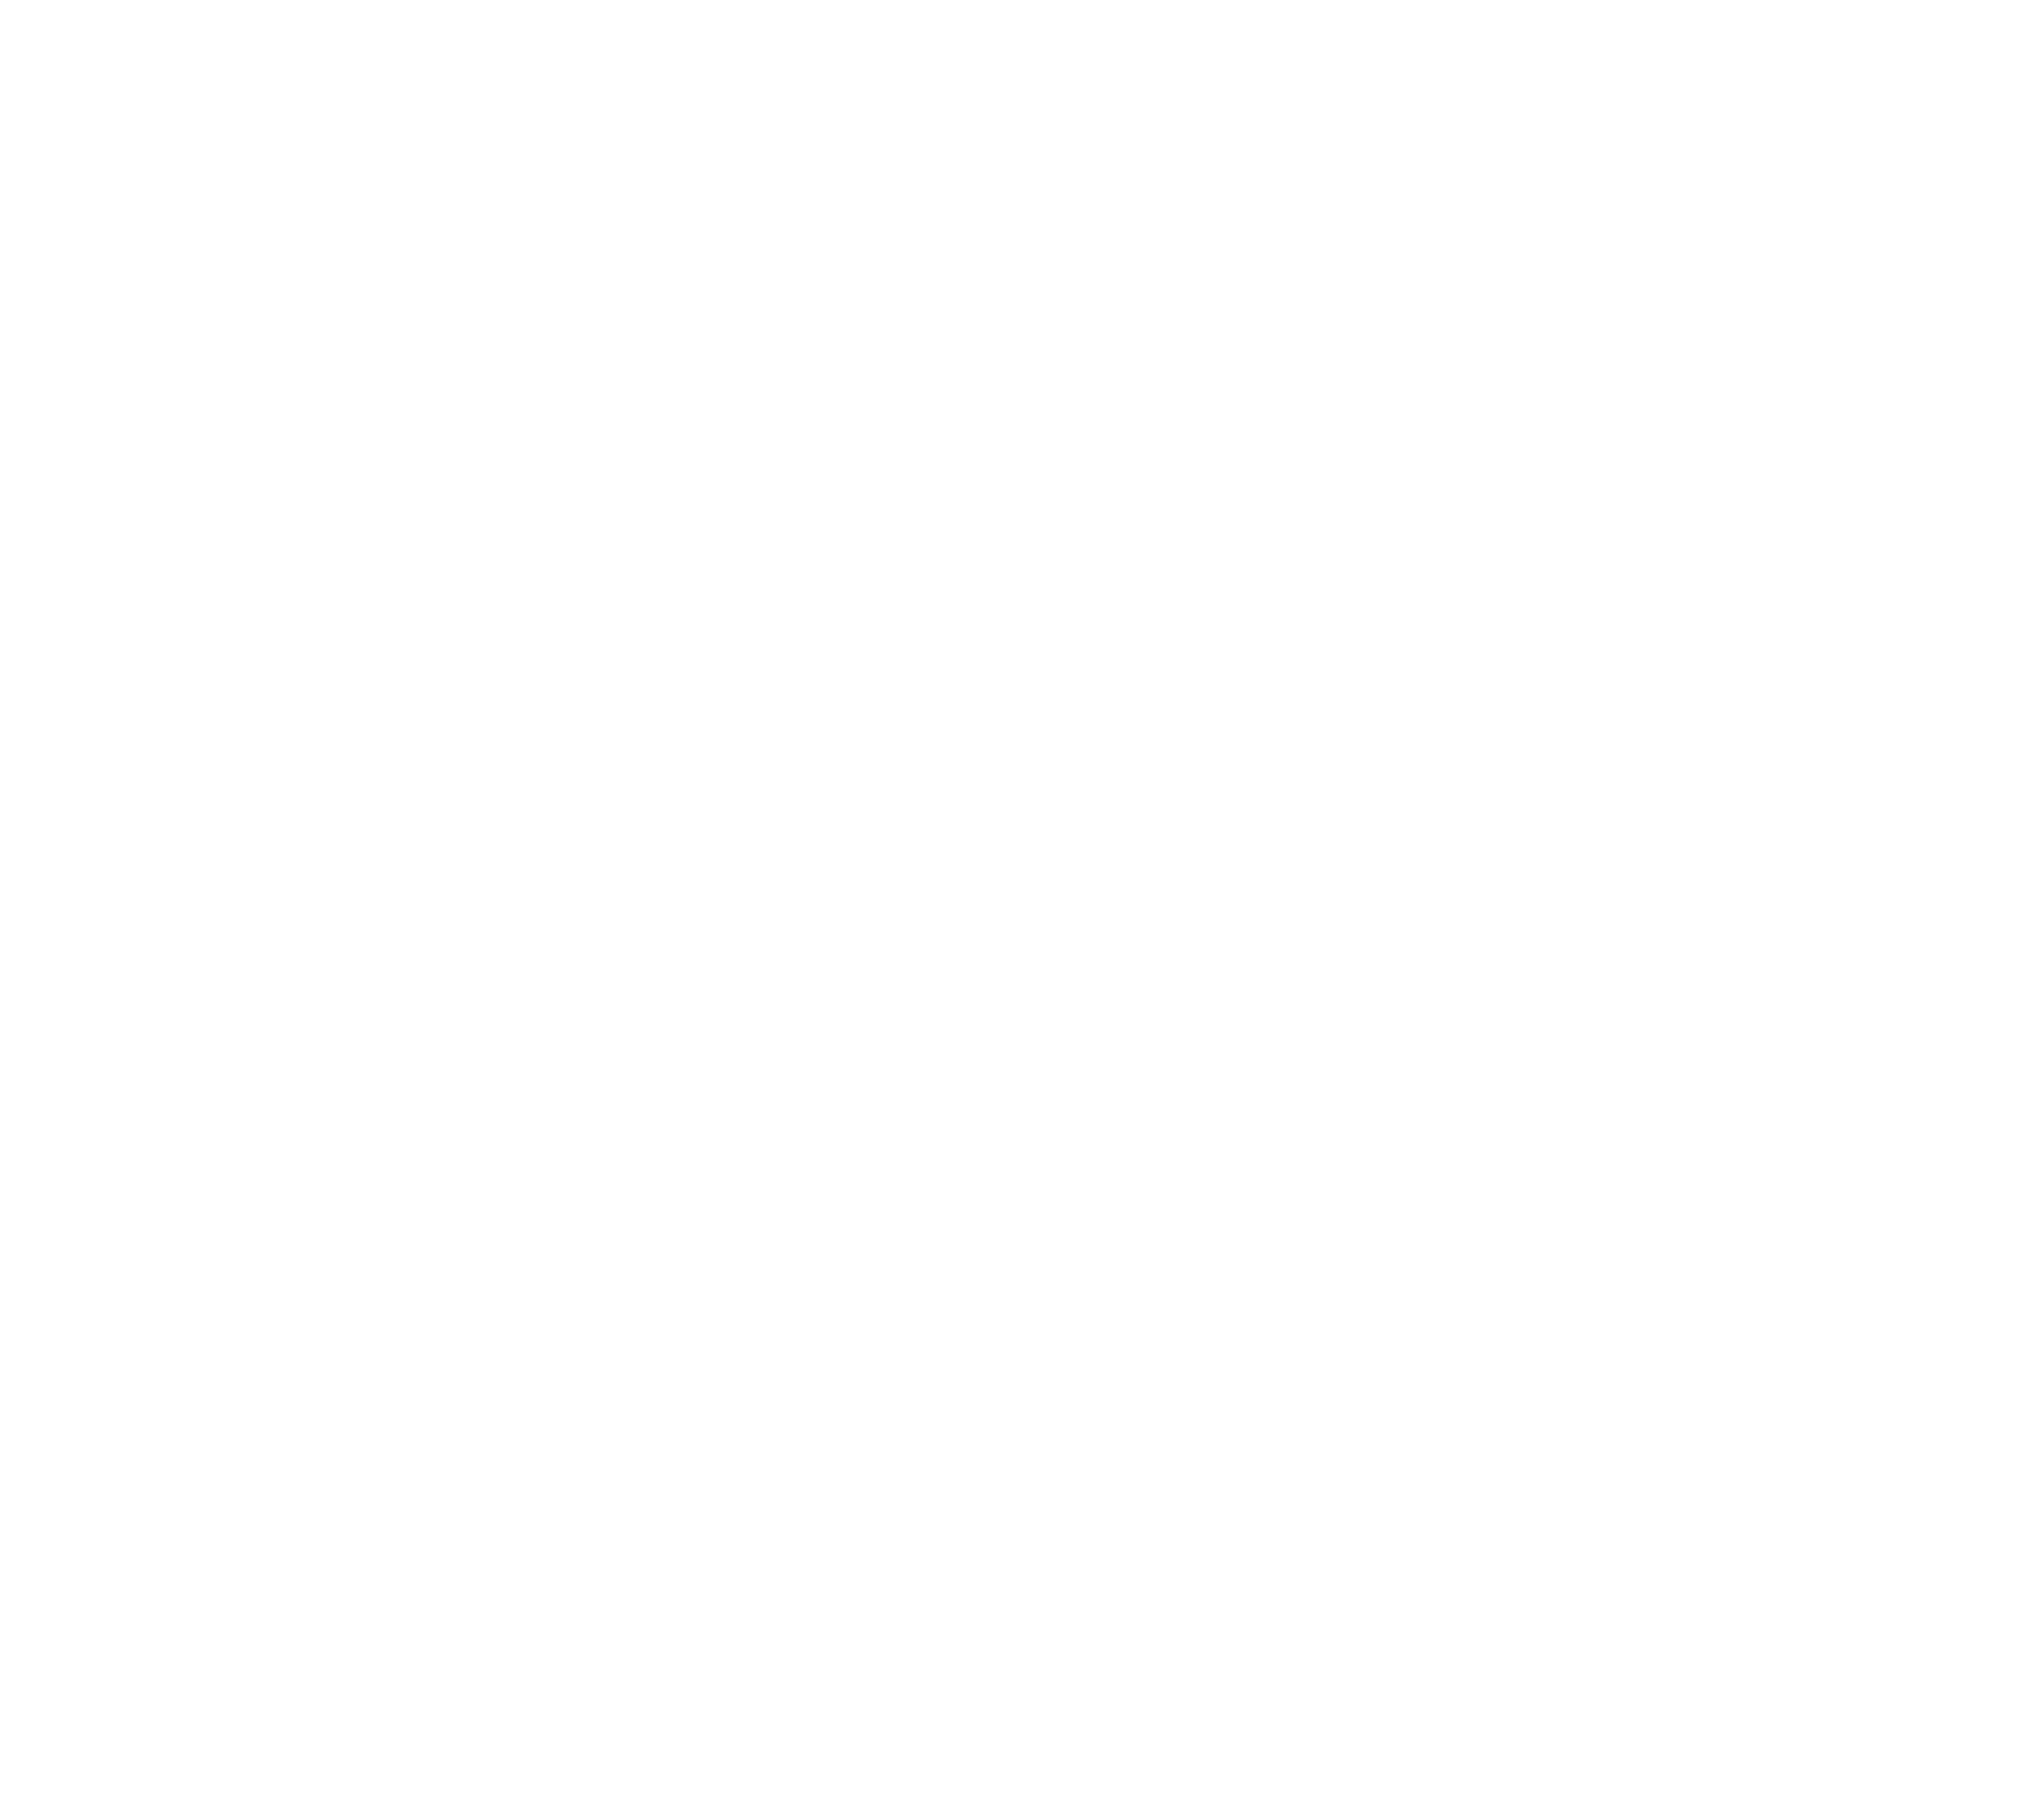 UniPV Sailing Team